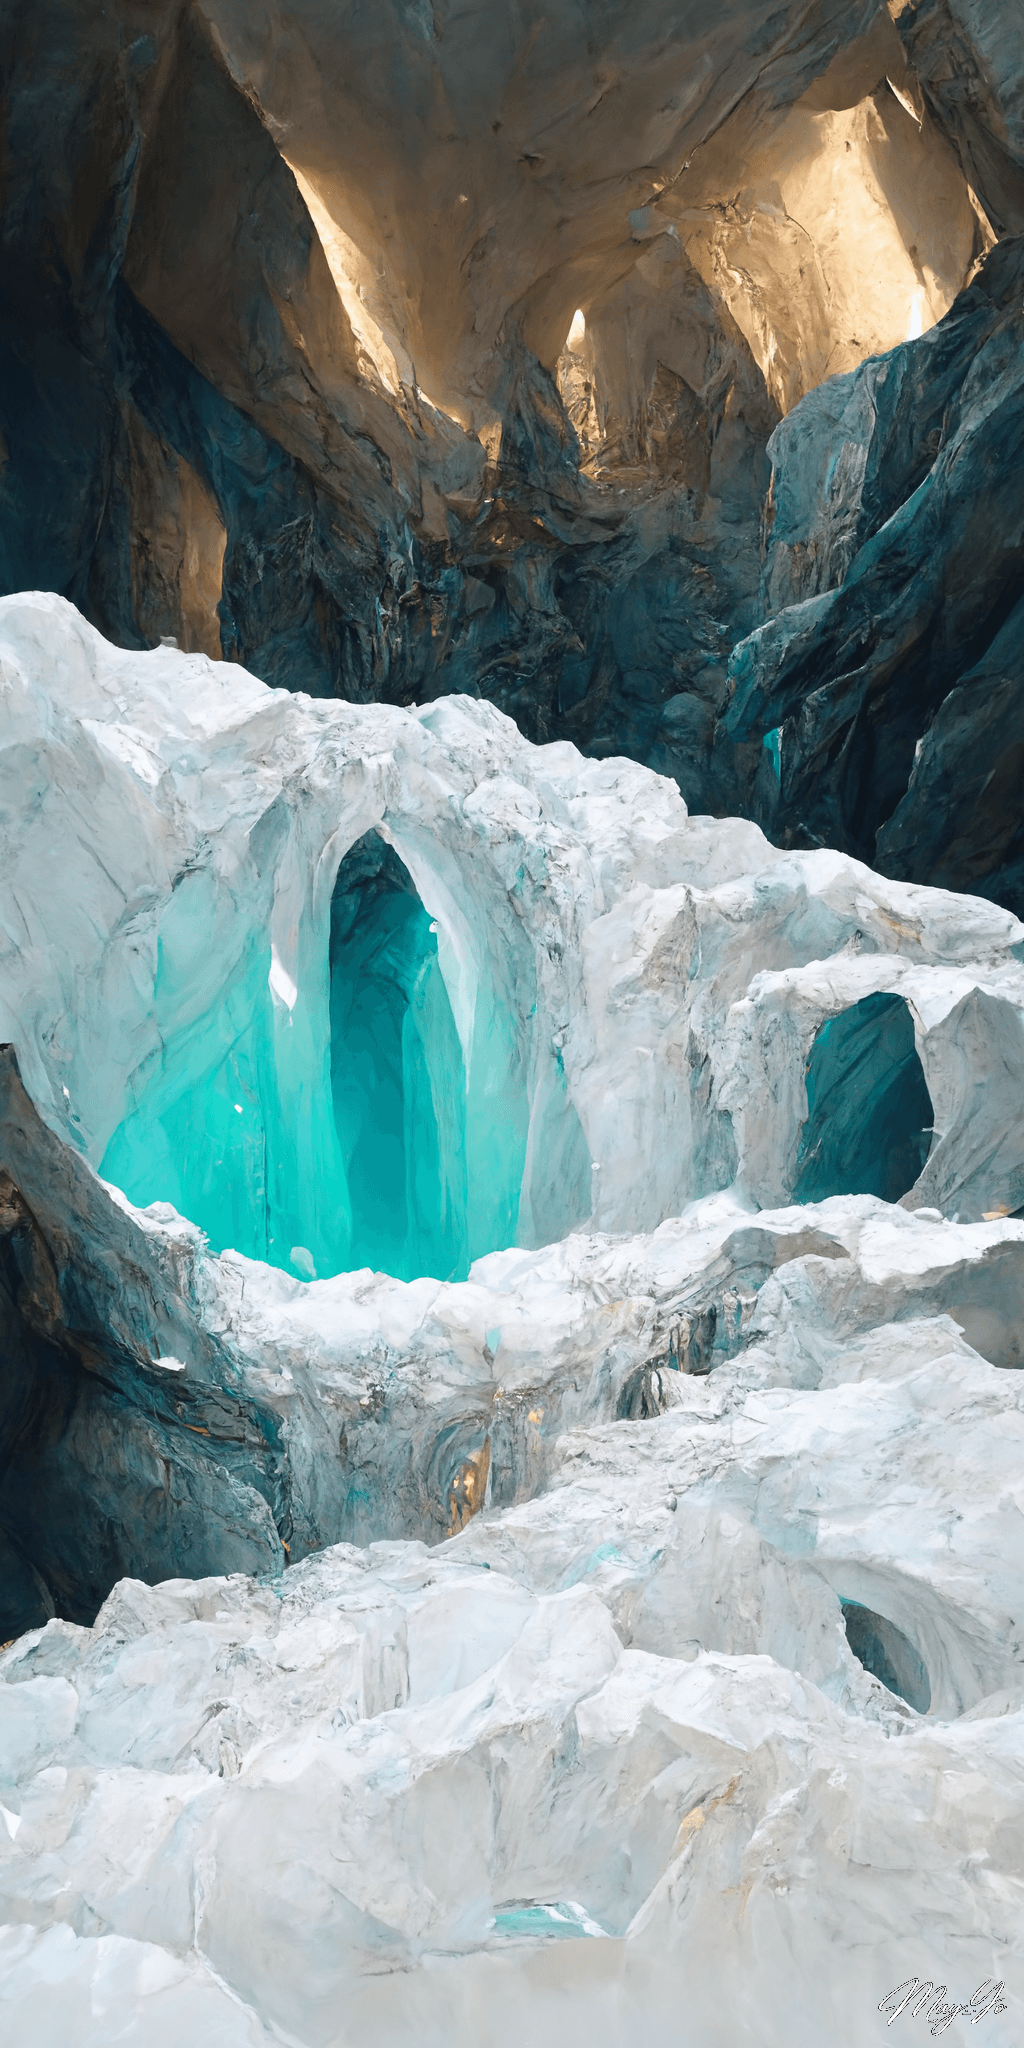 幻想的な氷の洞窟のイラスト 氷穴のダンジョンの壁紙 AIイラスト待受 縦長画像 icecave illustration